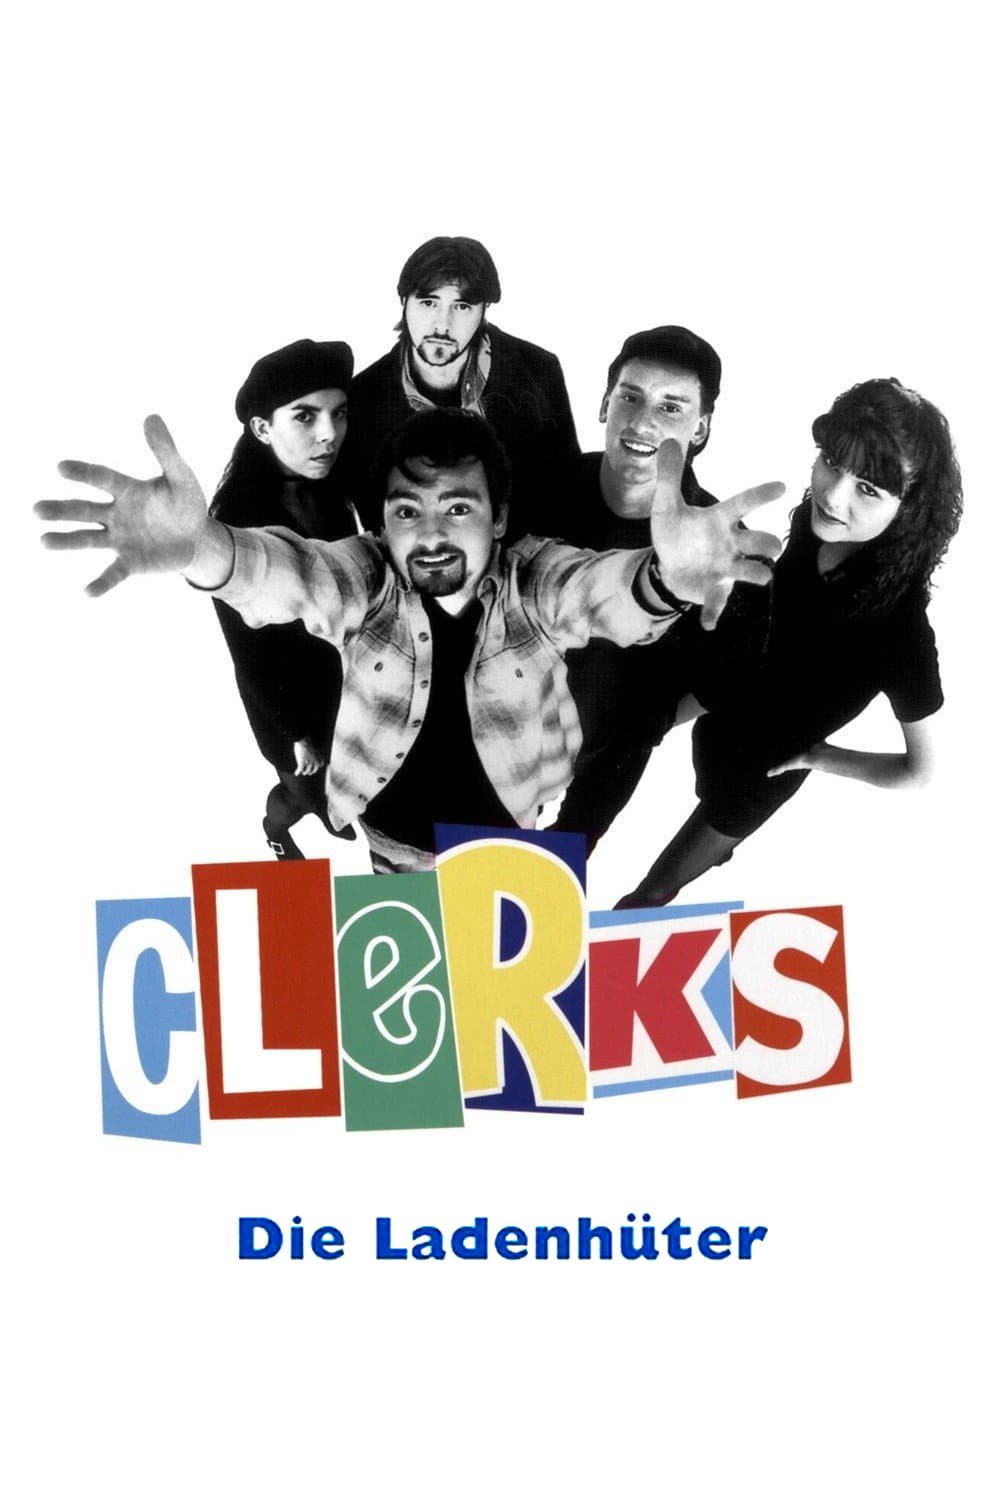 Plakat von "Clerks – Die Ladenhüter"